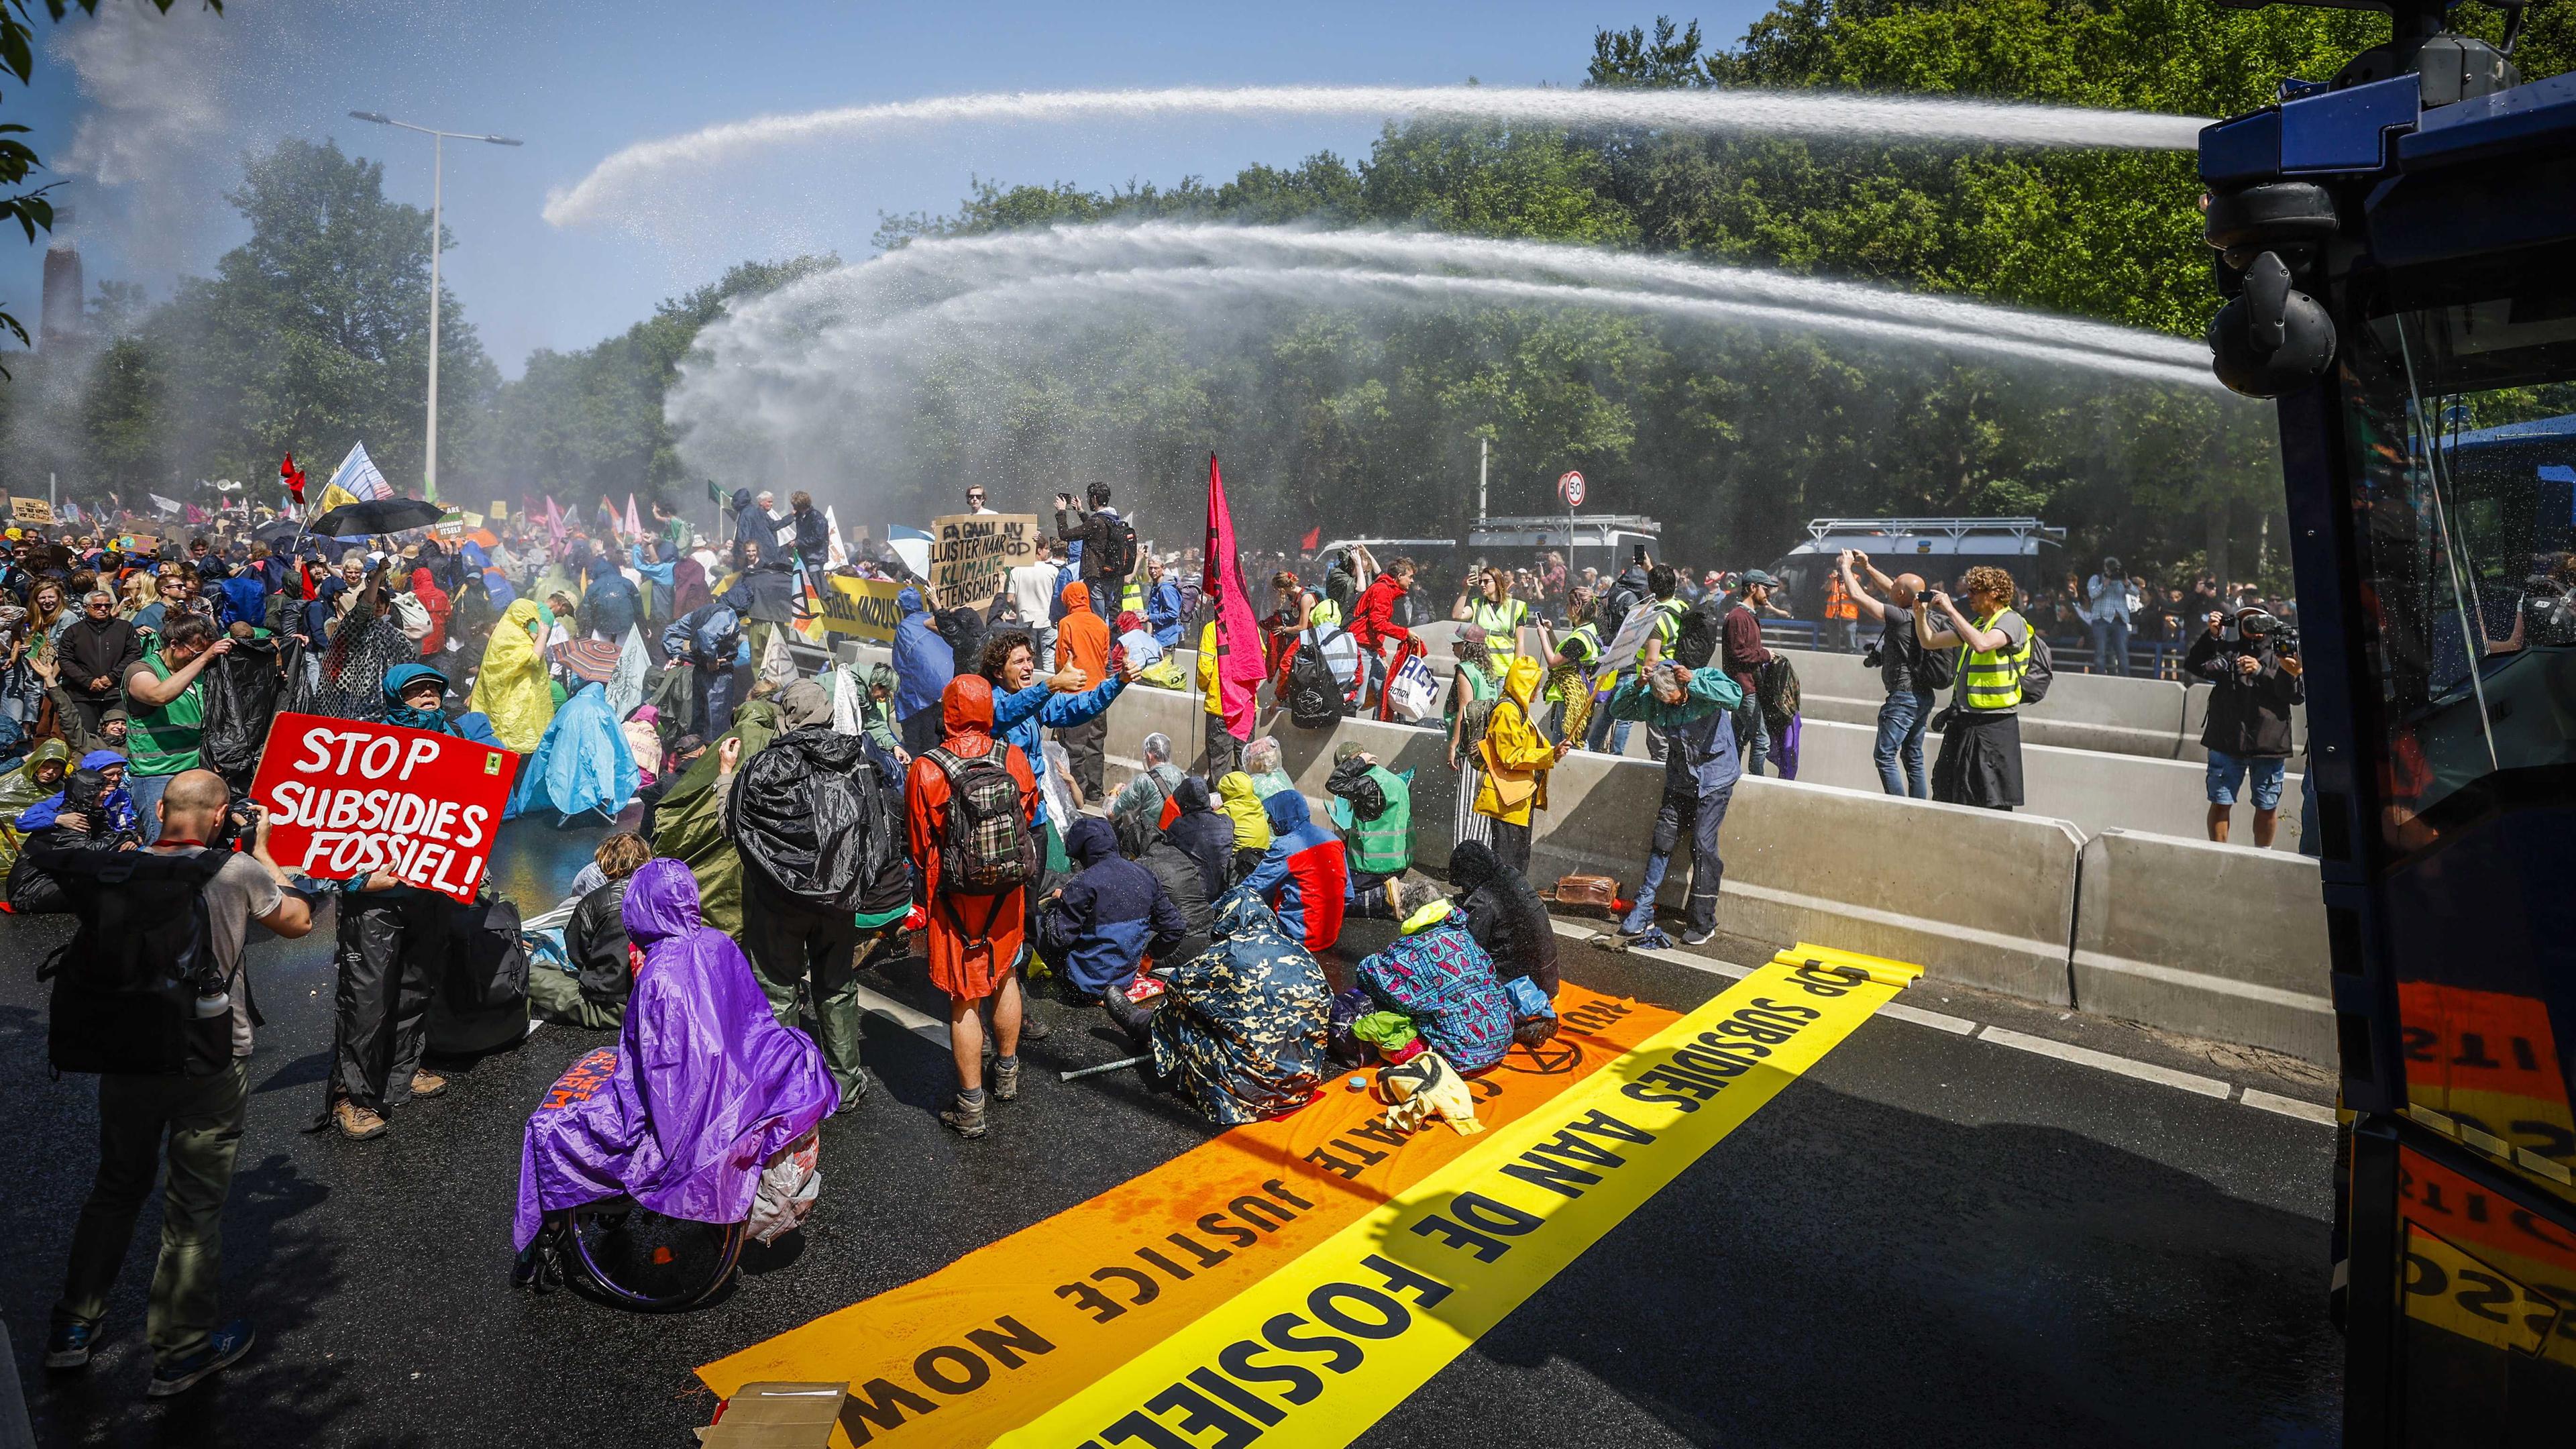 Polizei mit Wasserwerfen gegen die Demonstranten